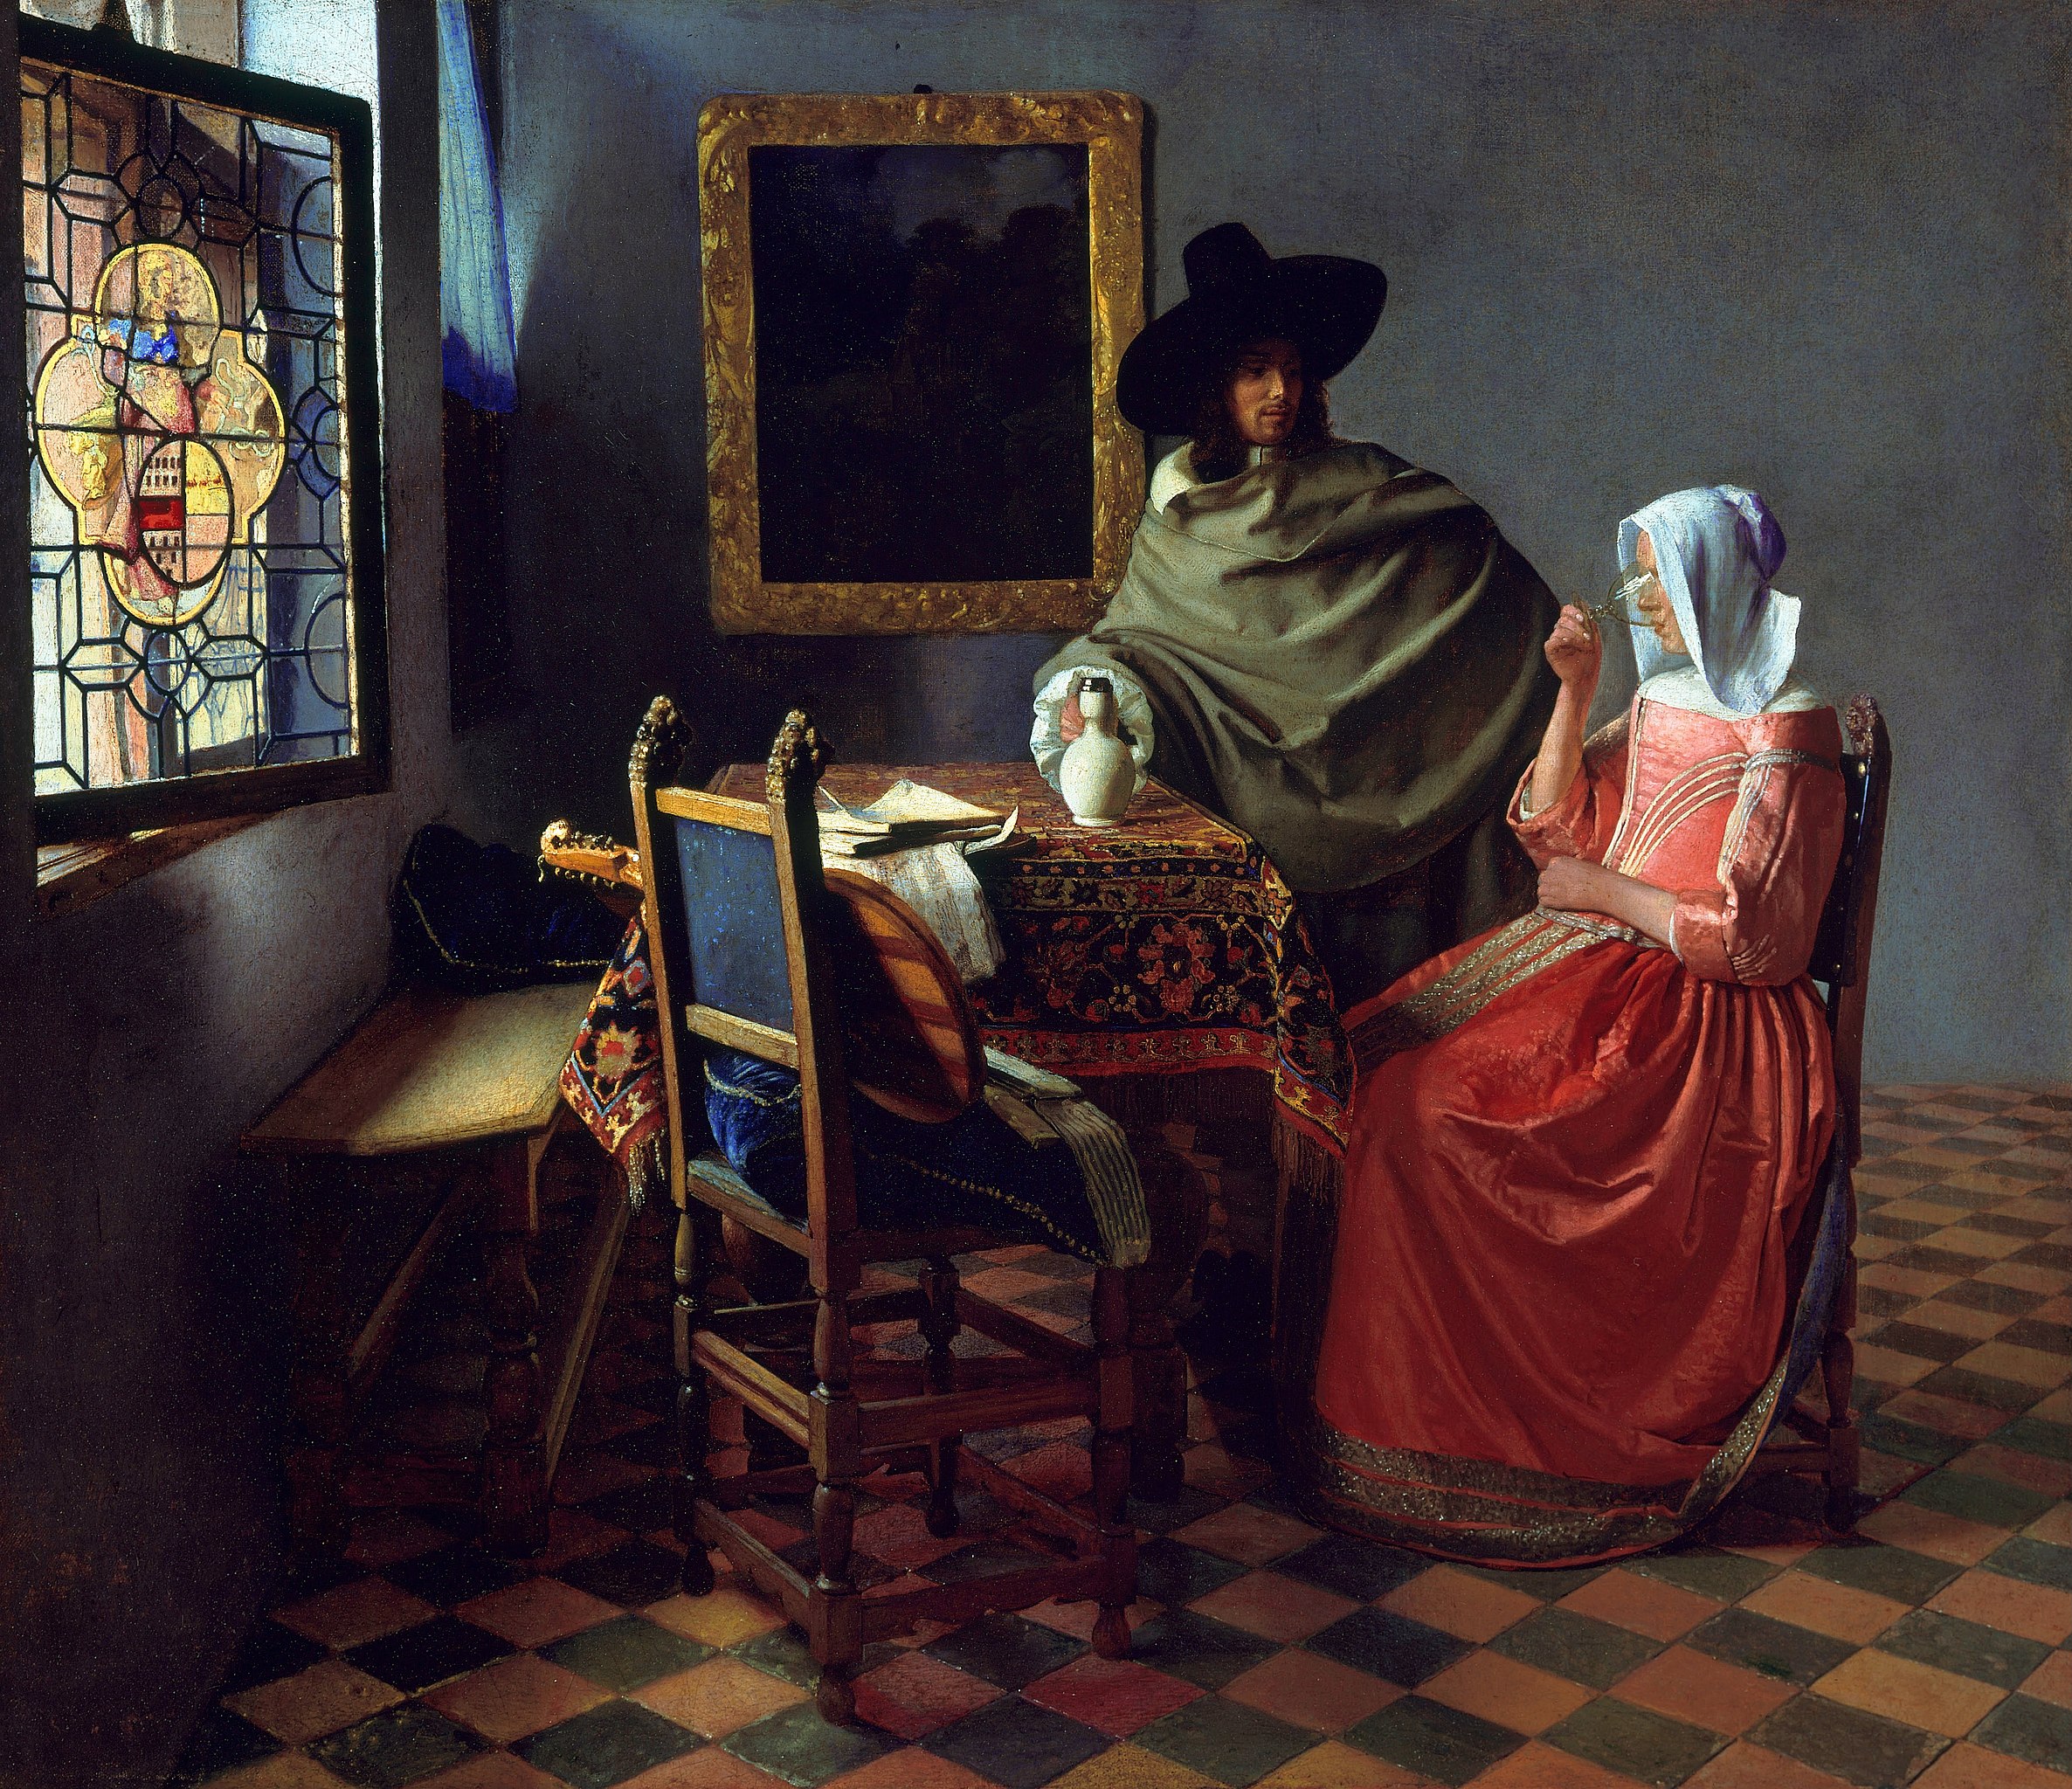 Vermeer's paintings